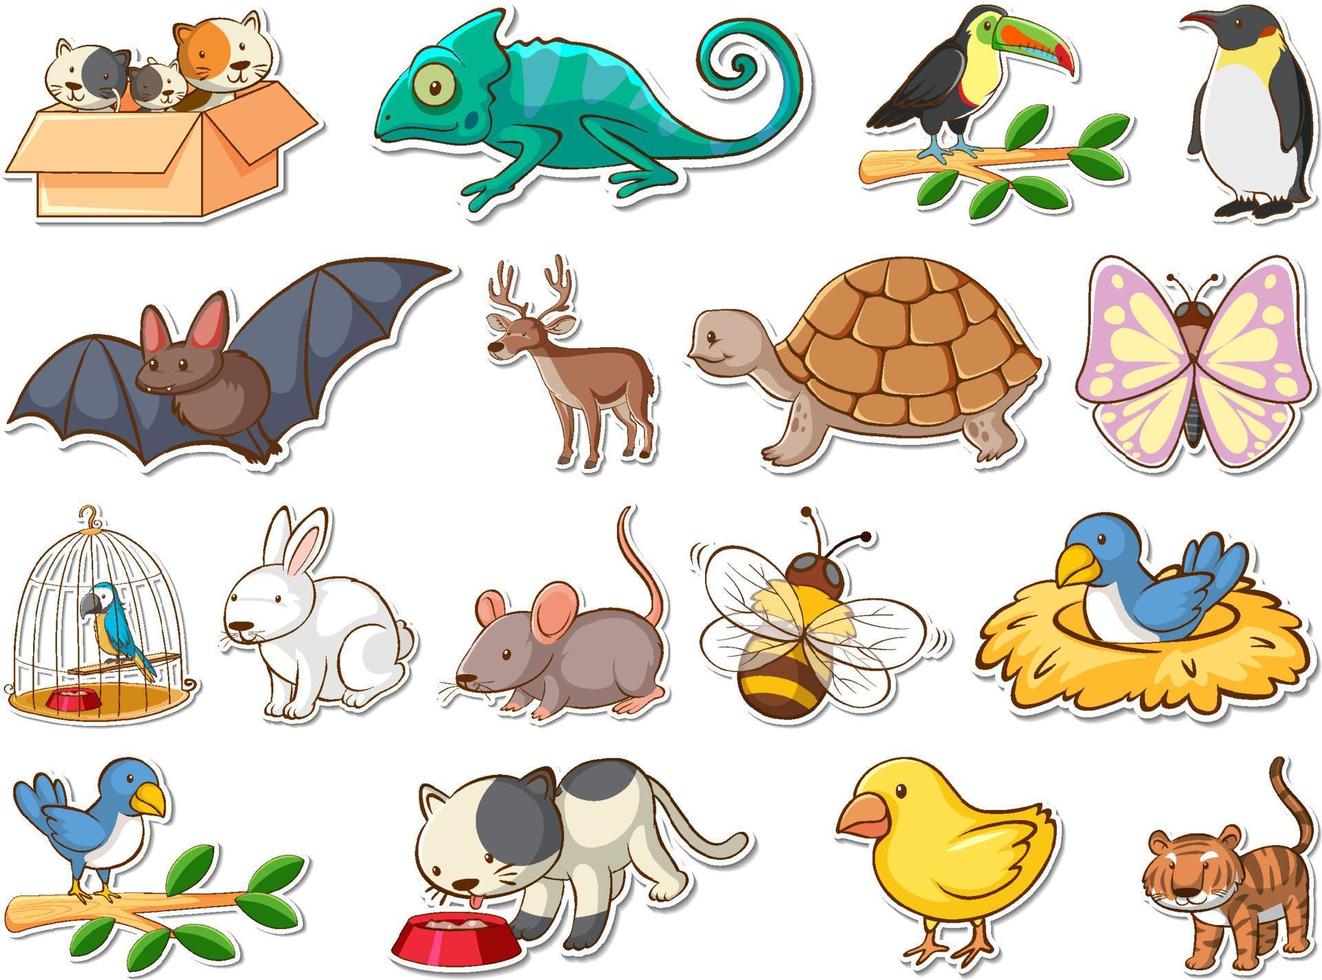 Sticker set of cartoon wild animals vector